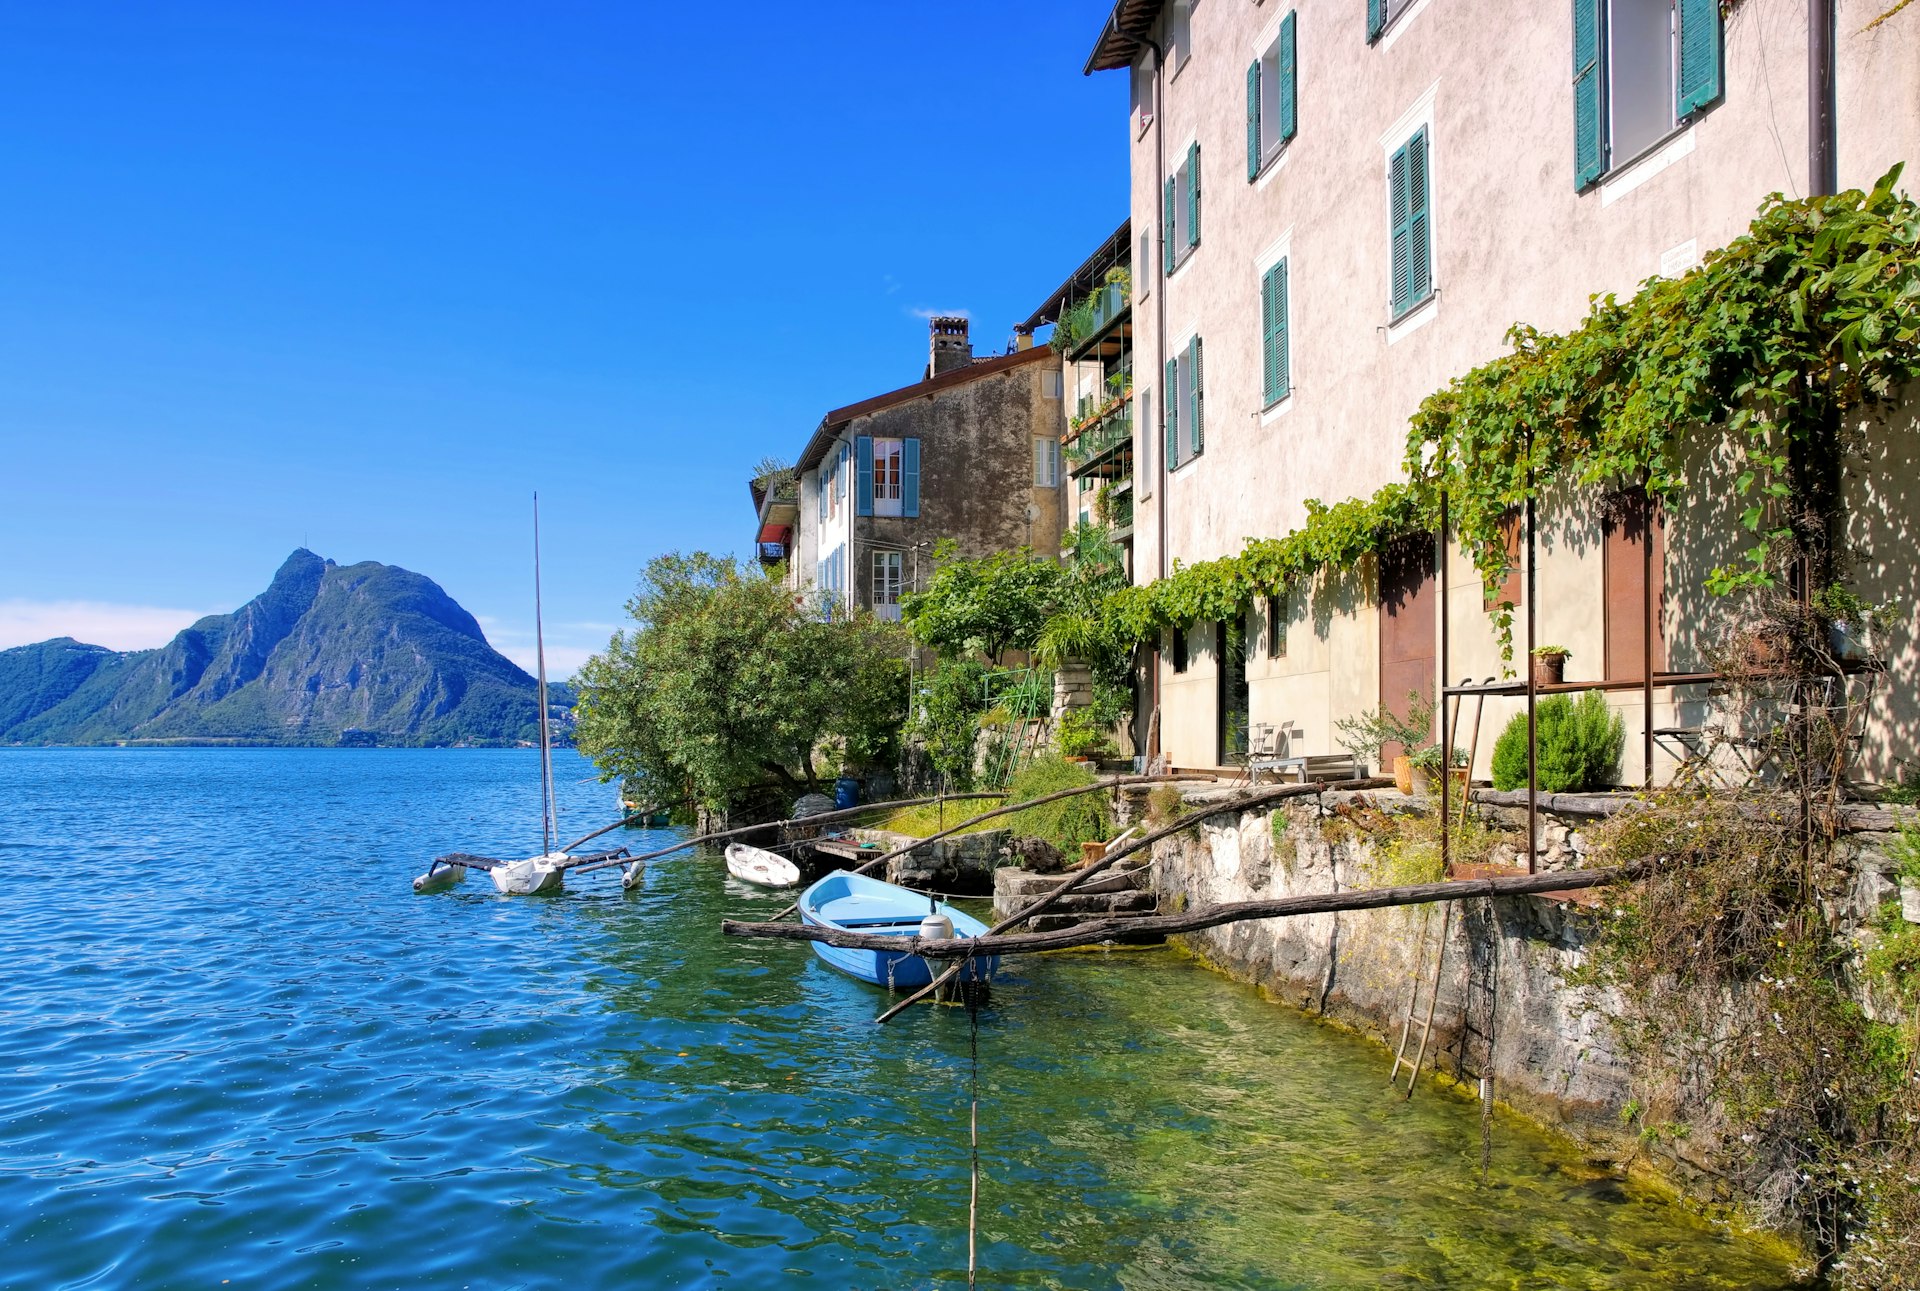 Barcos e edifícios à beira do lago na pequena aldeia de Gandria, no Lago Lugano.